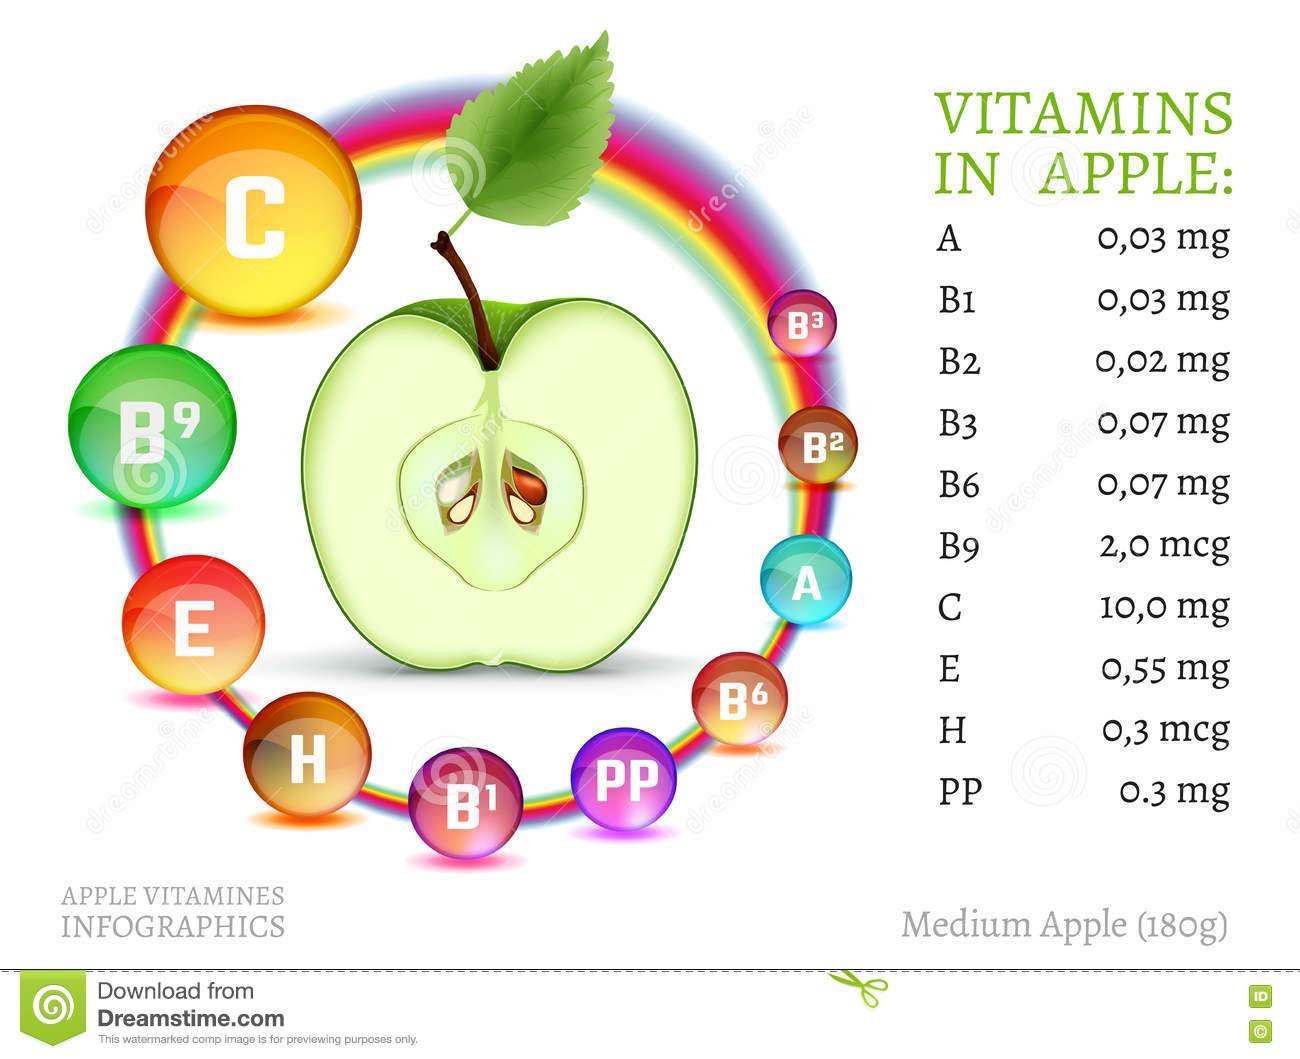 Яблоки — какие витамины содержат